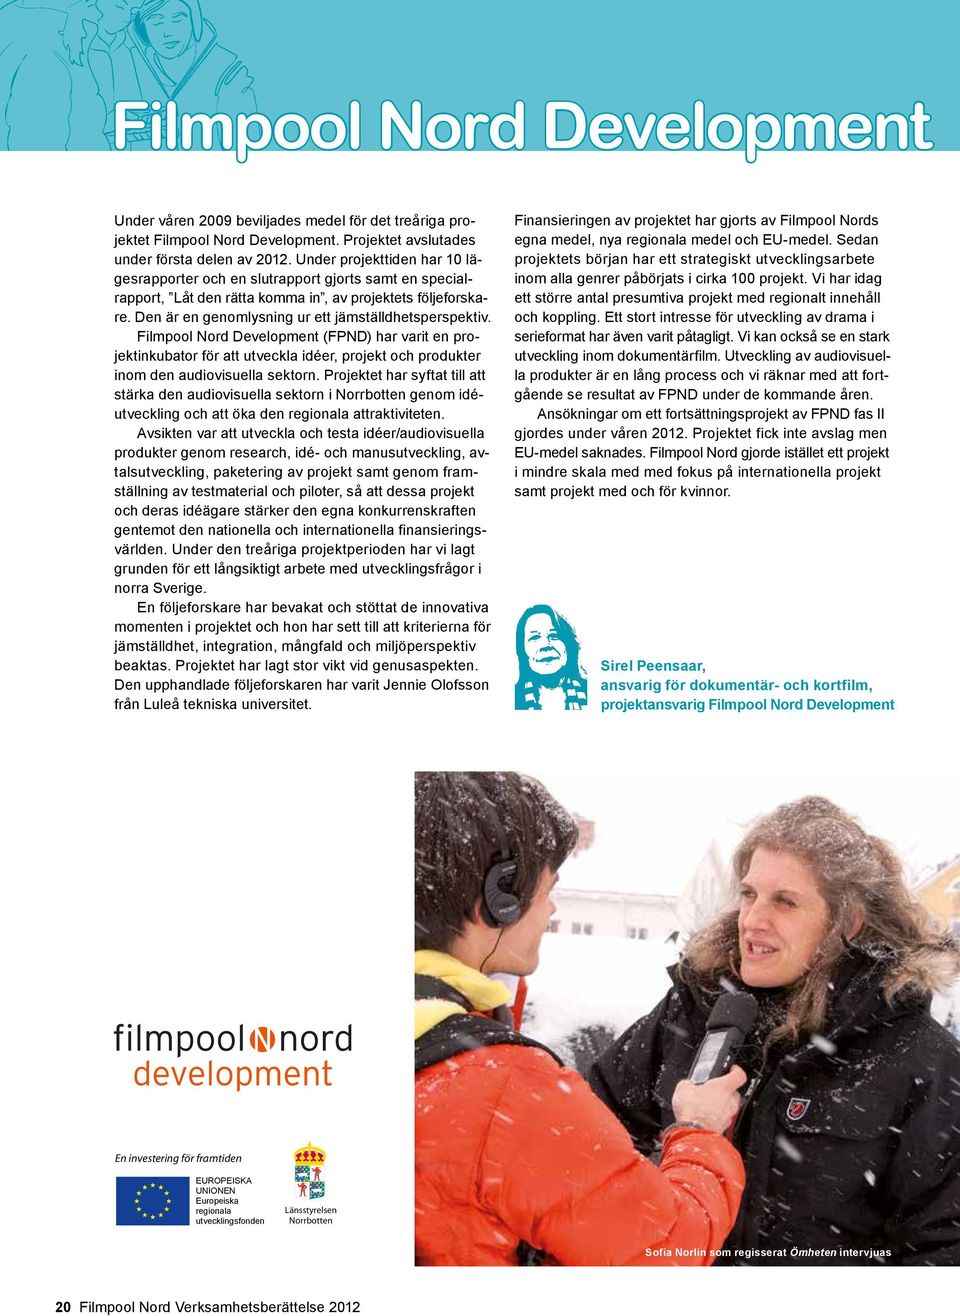 Filmpool Nord Development (FPND) har varit en projektinkubator för att utveckla idéer, projekt och produkter inom den audiovisuella sektorn.